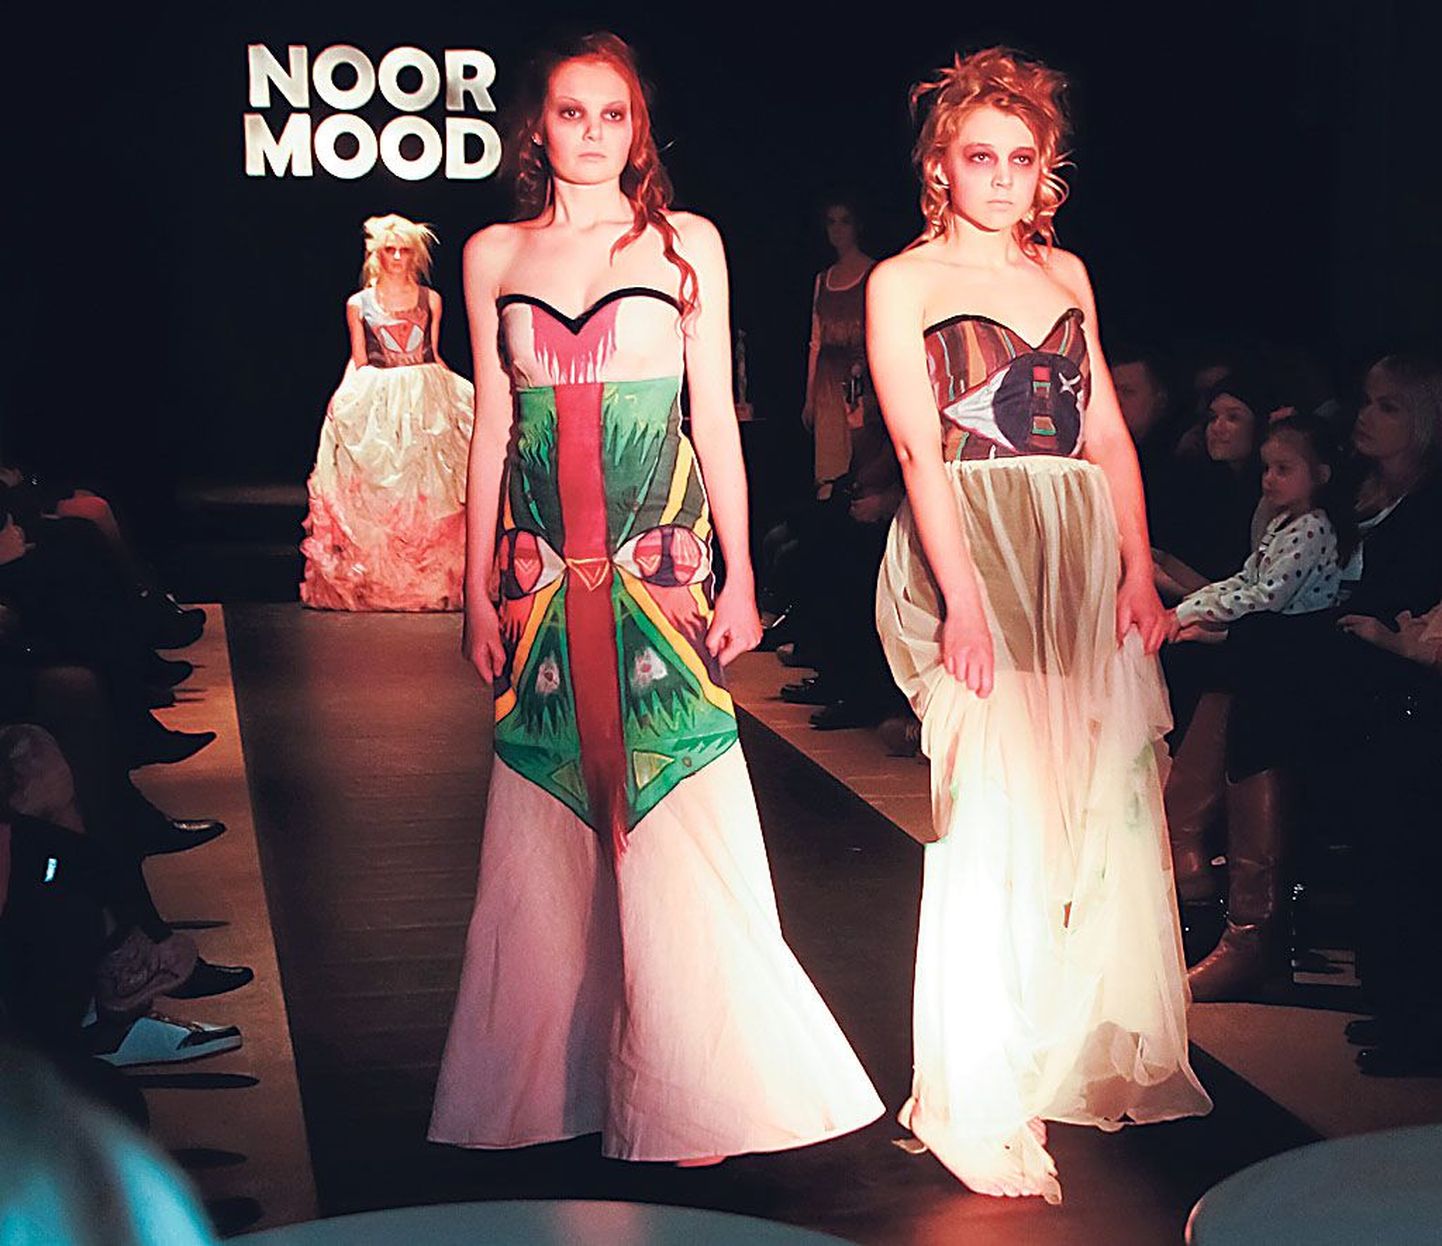 Konkursil “NoorMood” näeb nii praktilist kui fantaasiaküllast disaini, mida esitlevad algajad modellid.